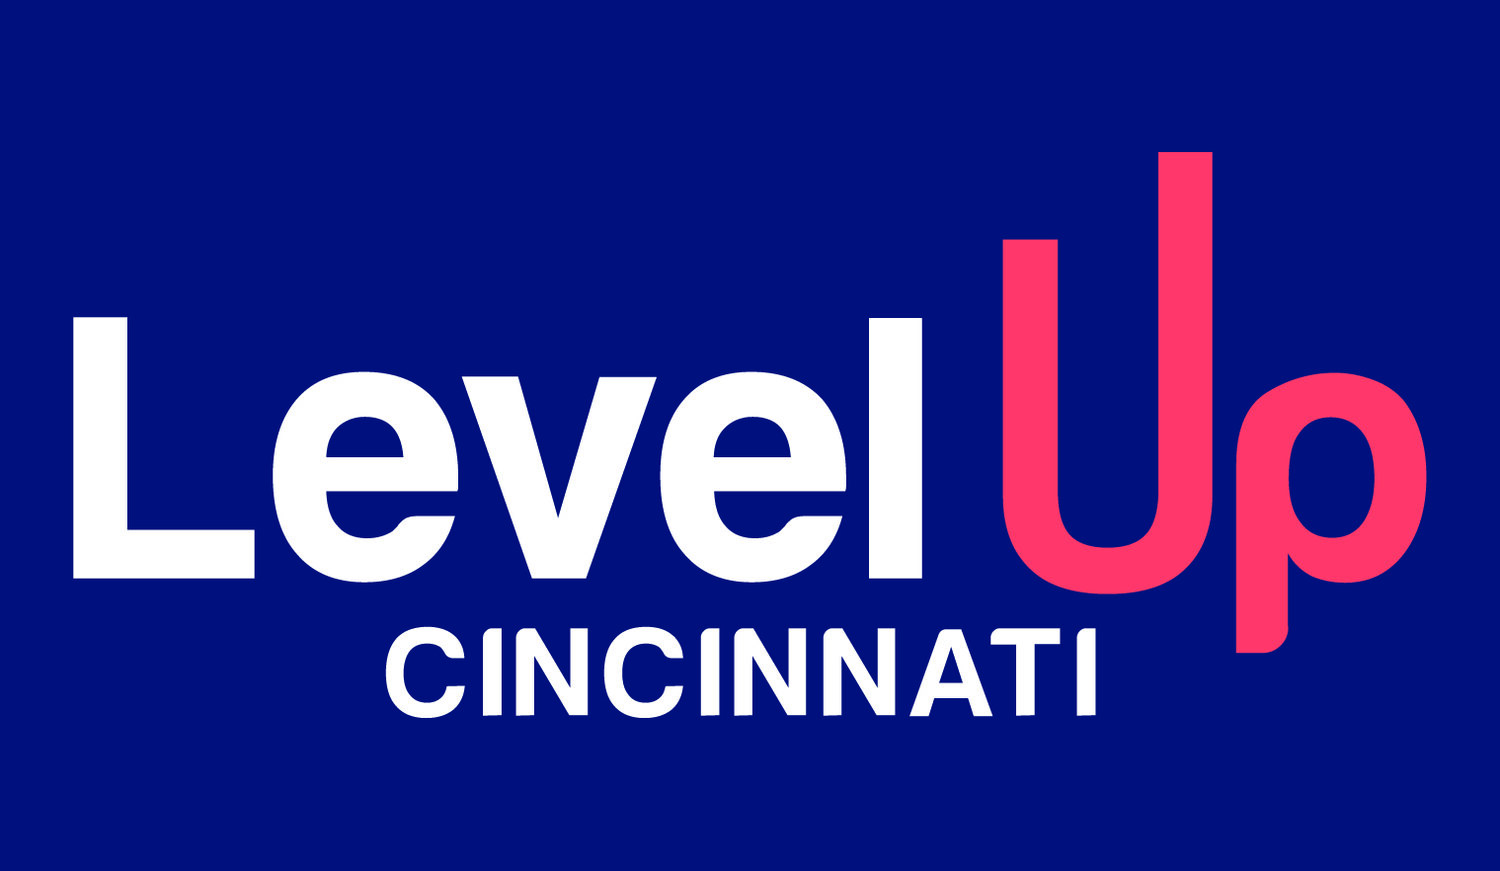 Level Up Cincinnati